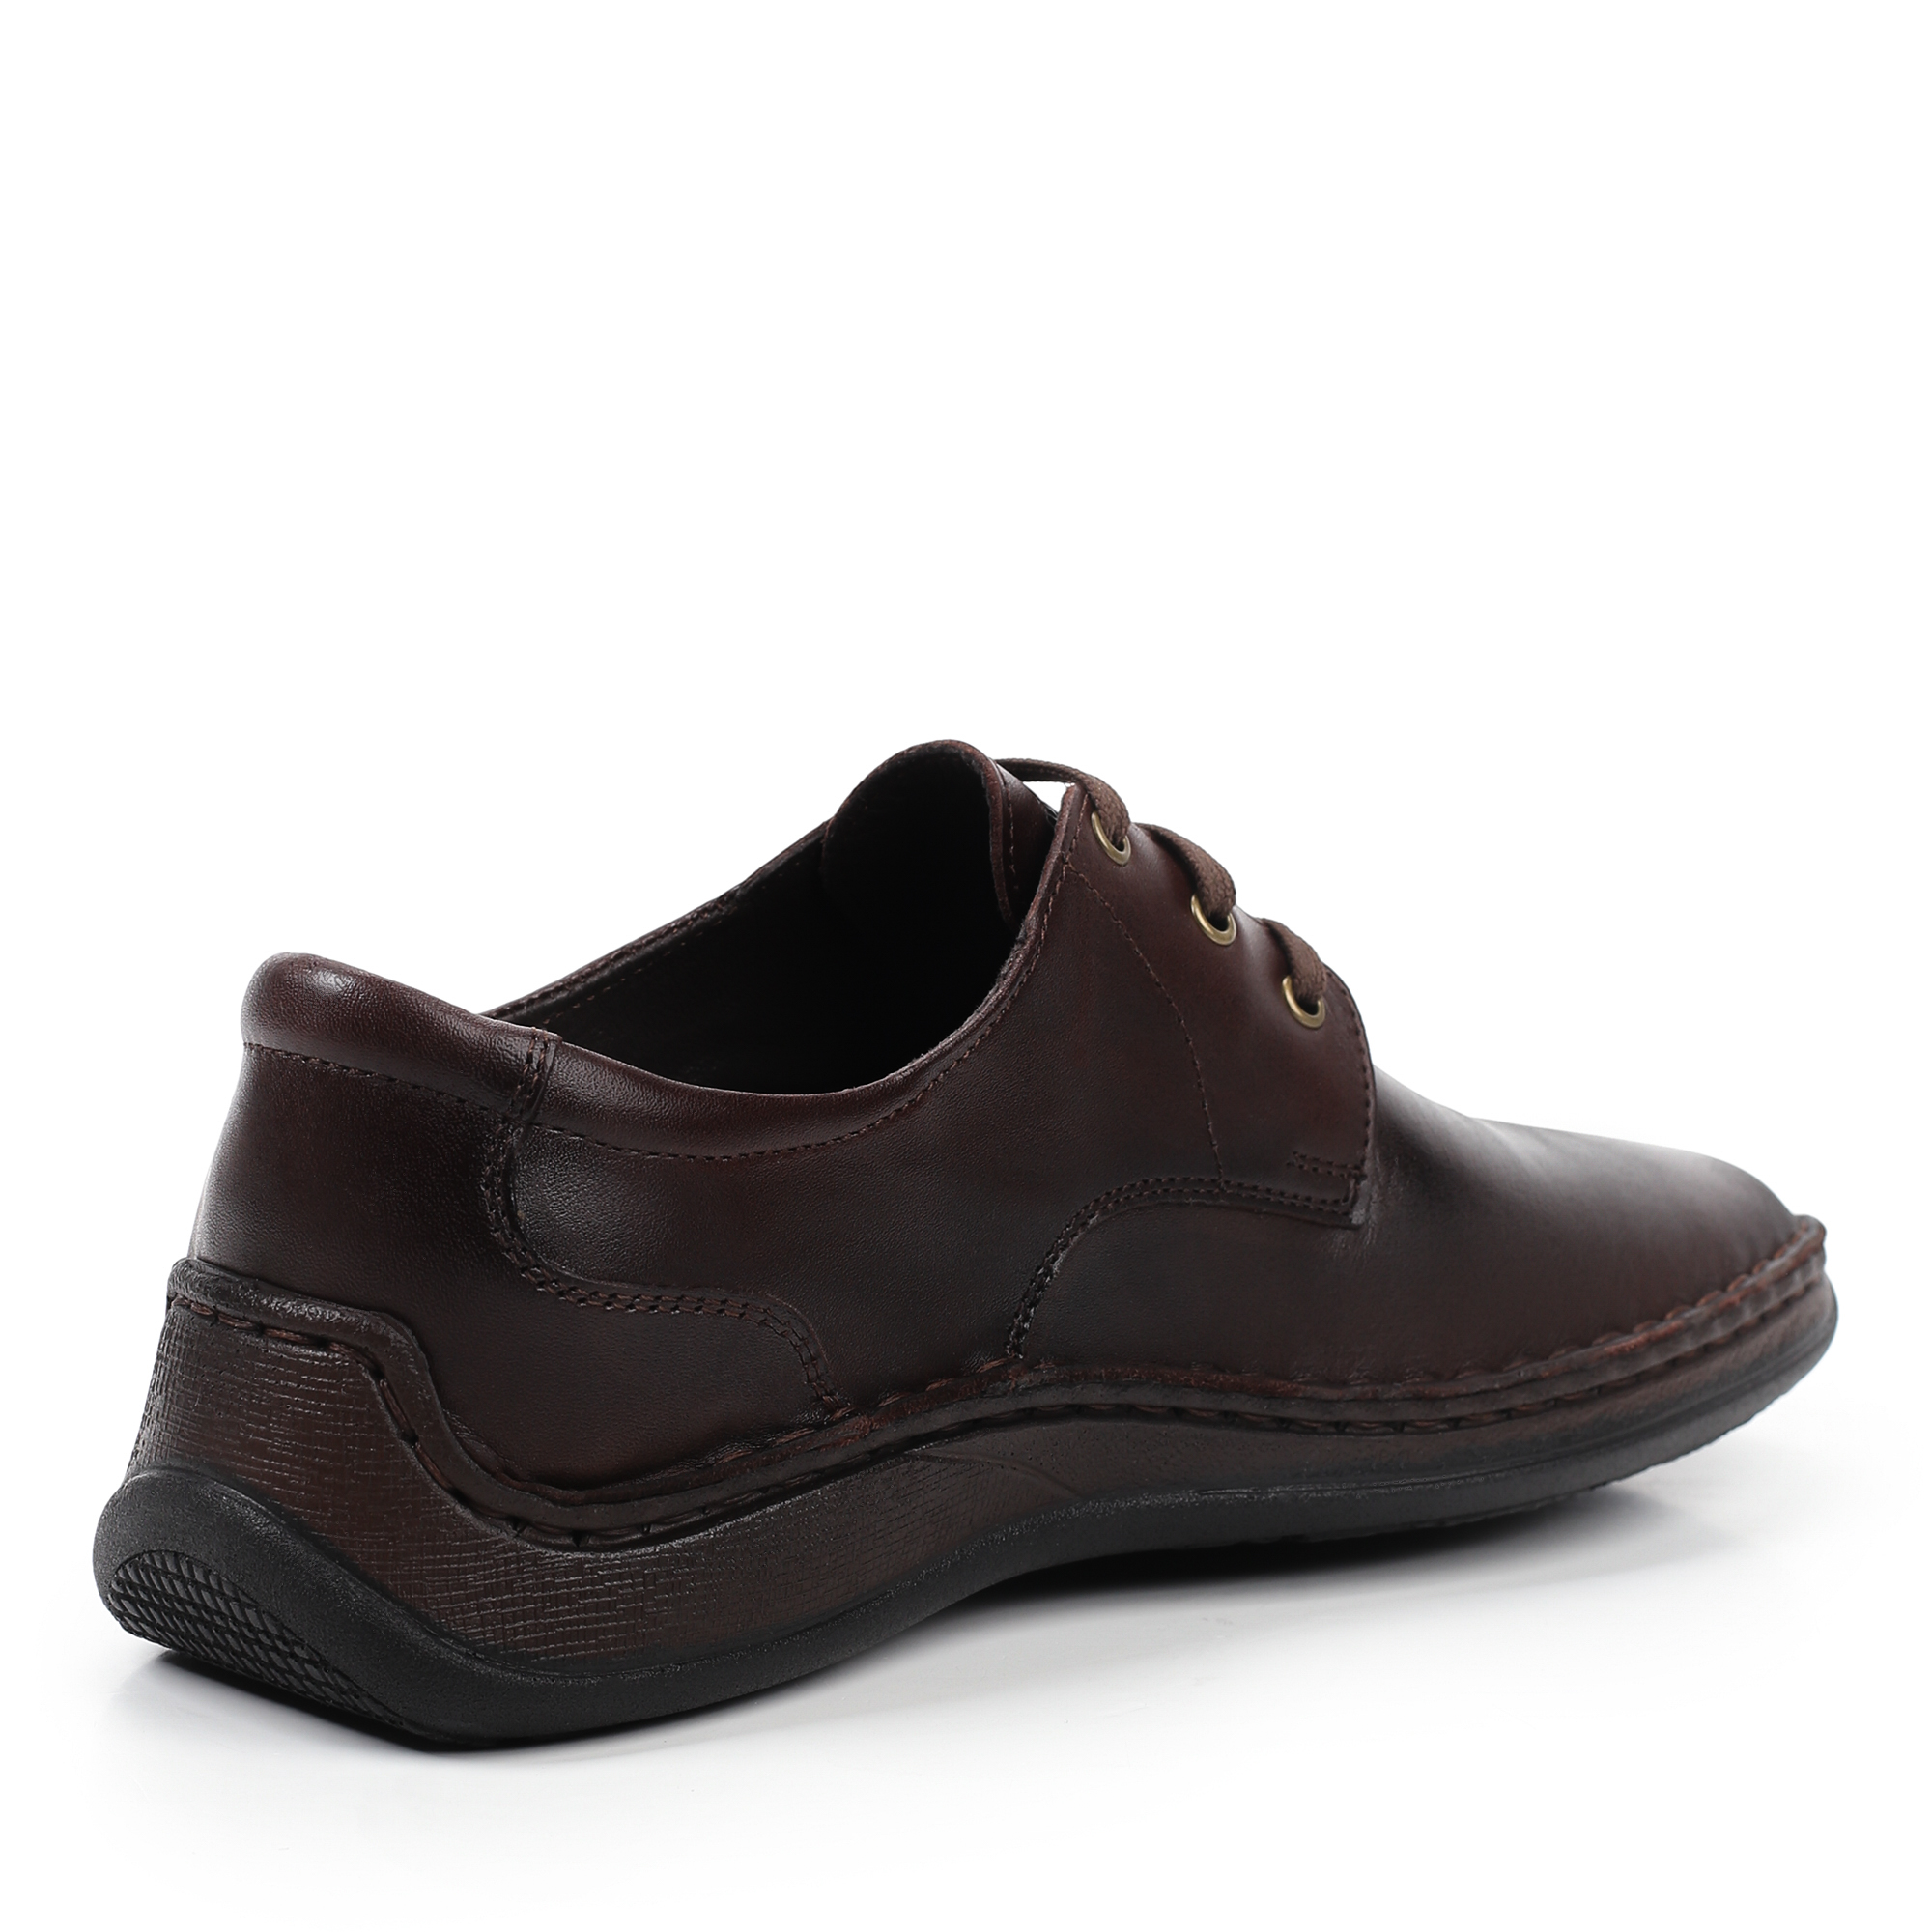 Туфли/полуботинки MUNZ Shoes 331-064A-11091, цвет темно-коричневый, размер 43 - фото 3